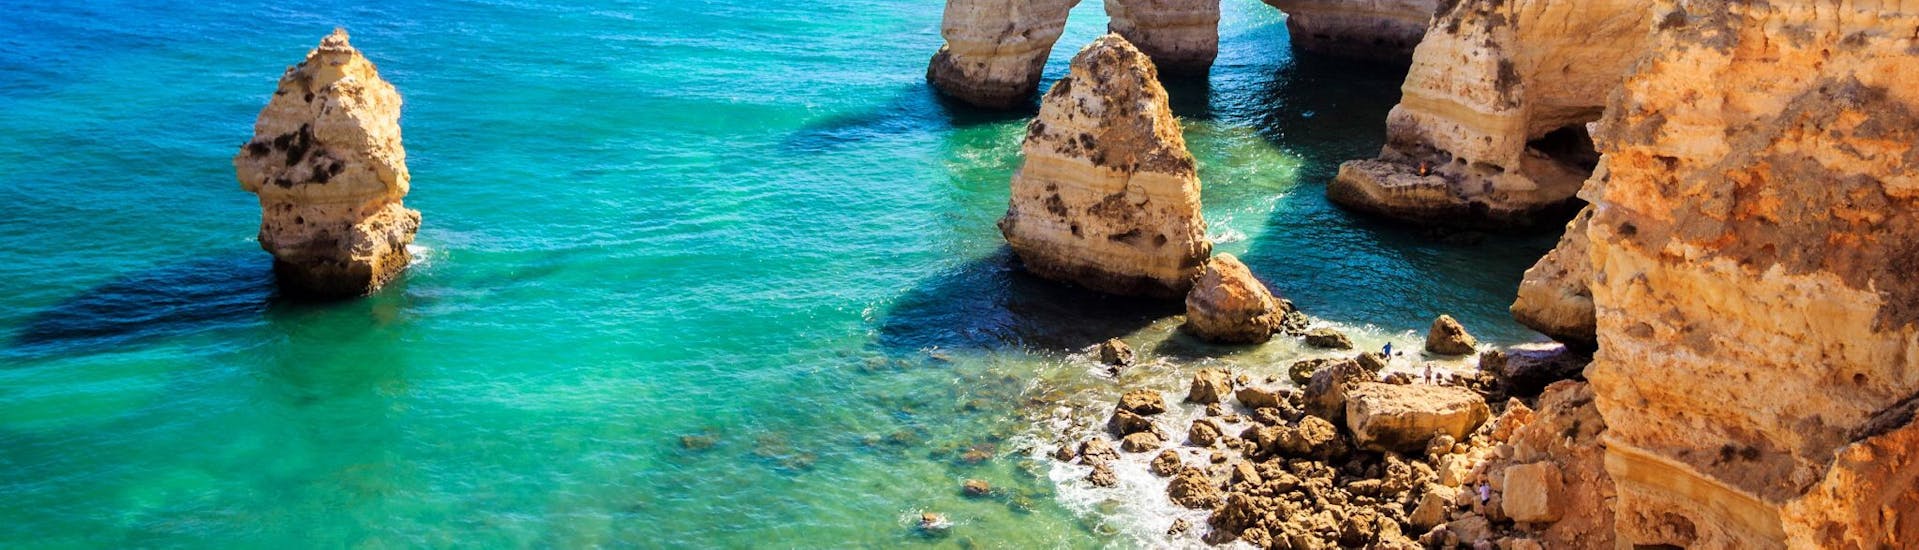 Bild der wunderschönen Algarveküste, aufgenommen während einer Bootstour mit Algarve Boa Vida Tours.